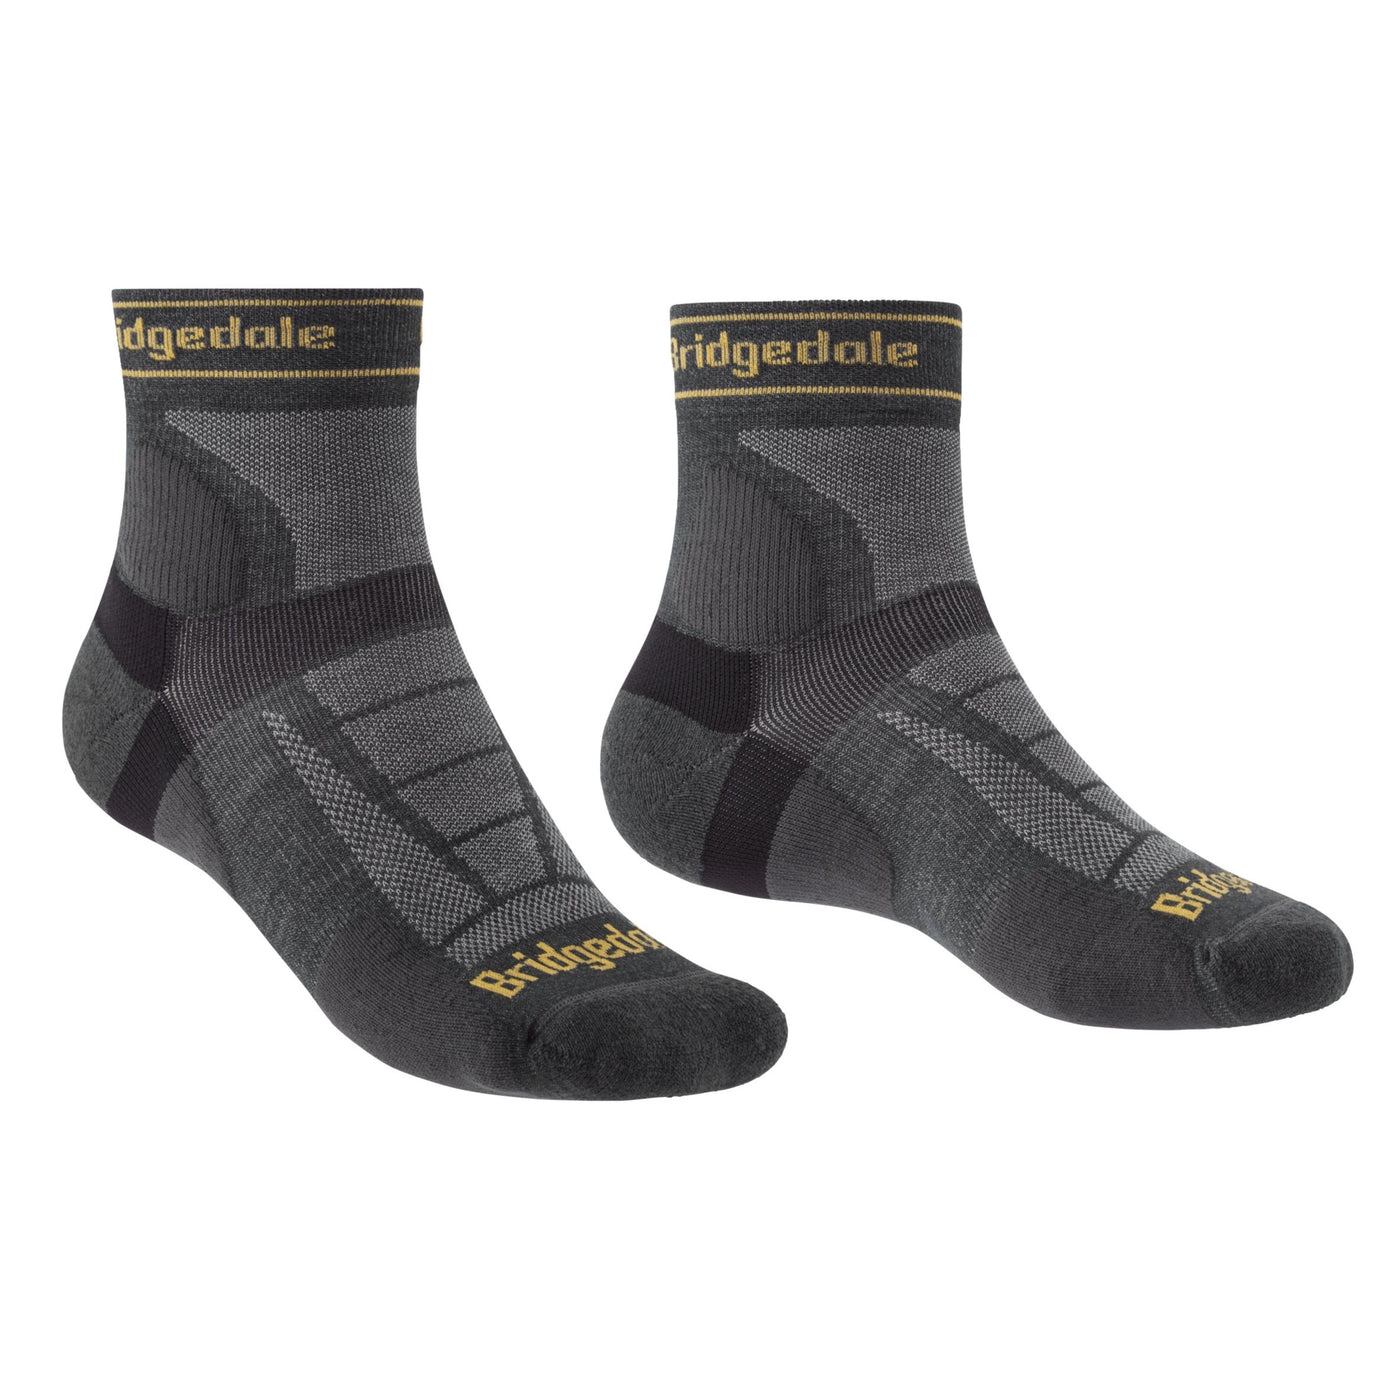 Bridgedale Trail Run Ultralight T2 Merino Socks, Men's NZ